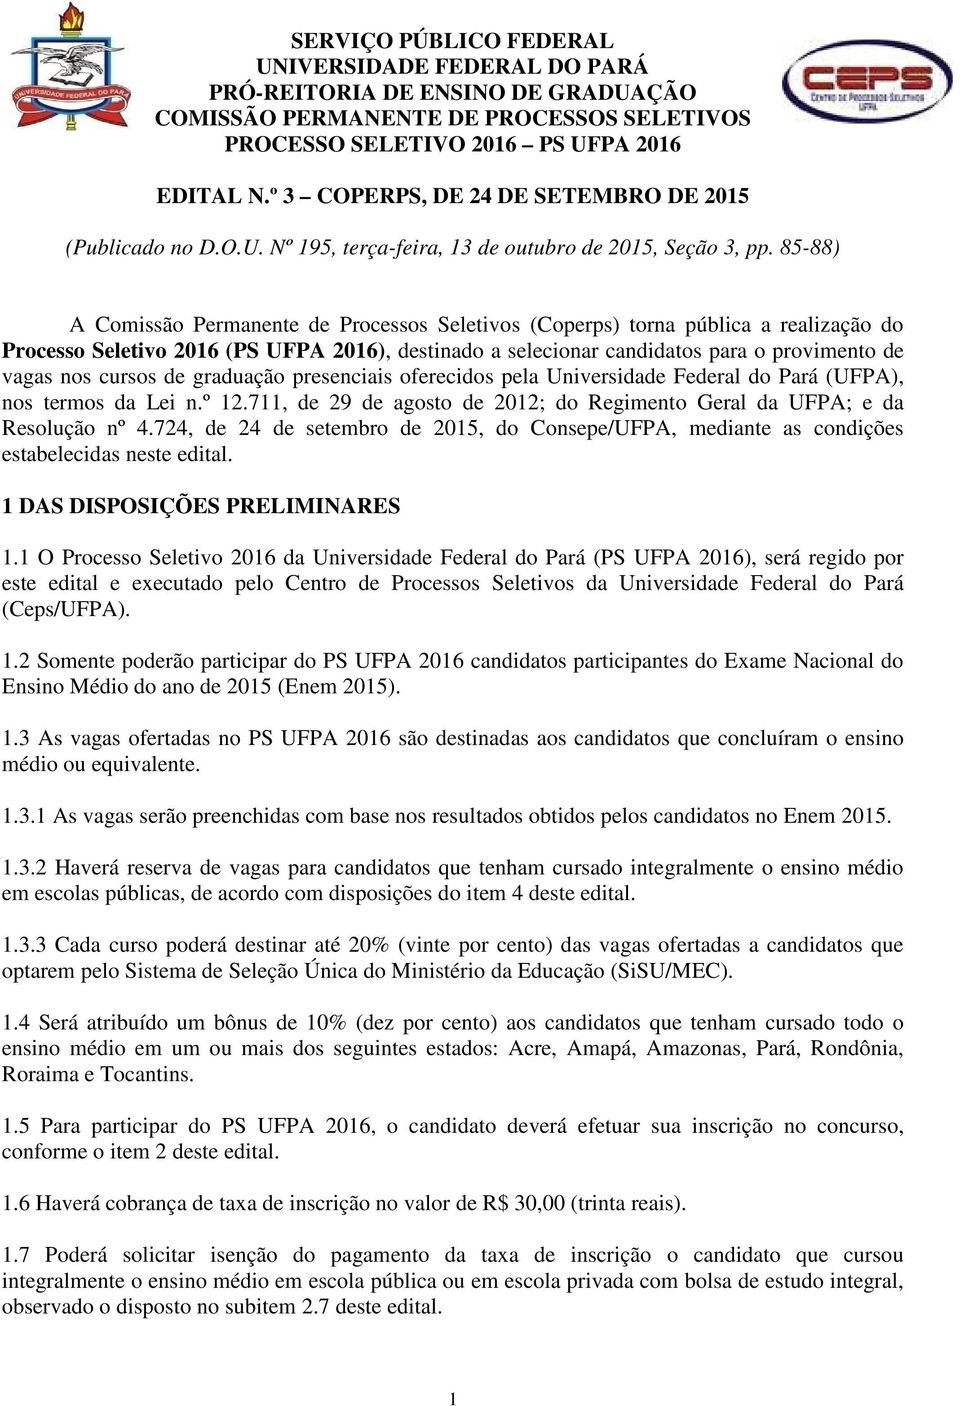 85-88) A Comissão Permanente de Processos Seletivos (Coperps) torna pública a realização do Processo Seletivo 2016 (PS UFPA 2016), destinado a selecionar candidatos para o provimento de vagas nos